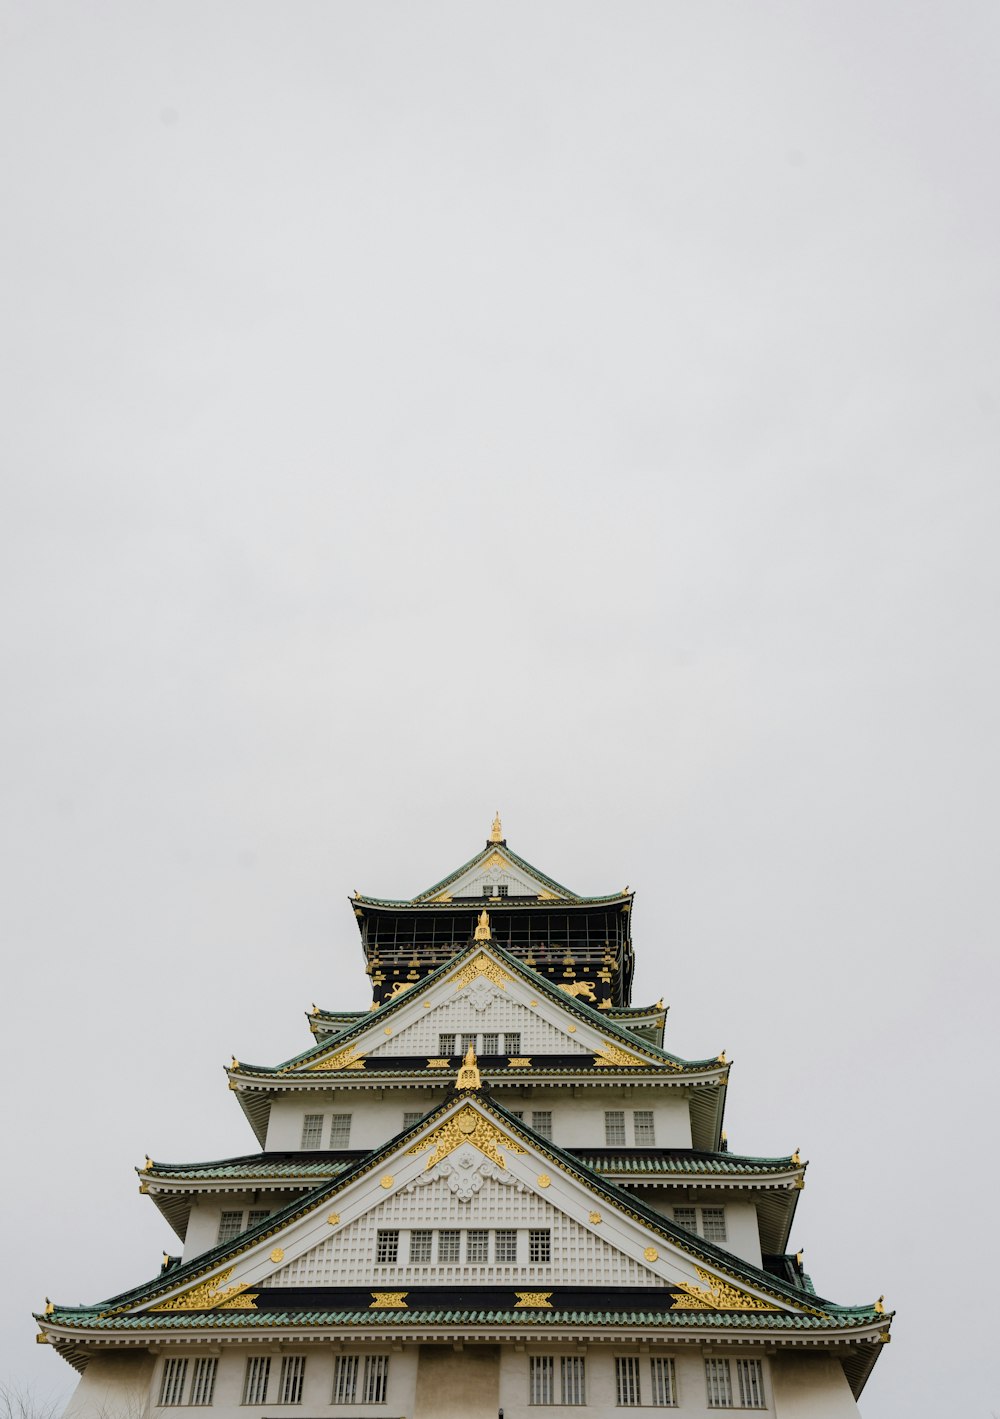 Edificio de la pagoda blanca y negra